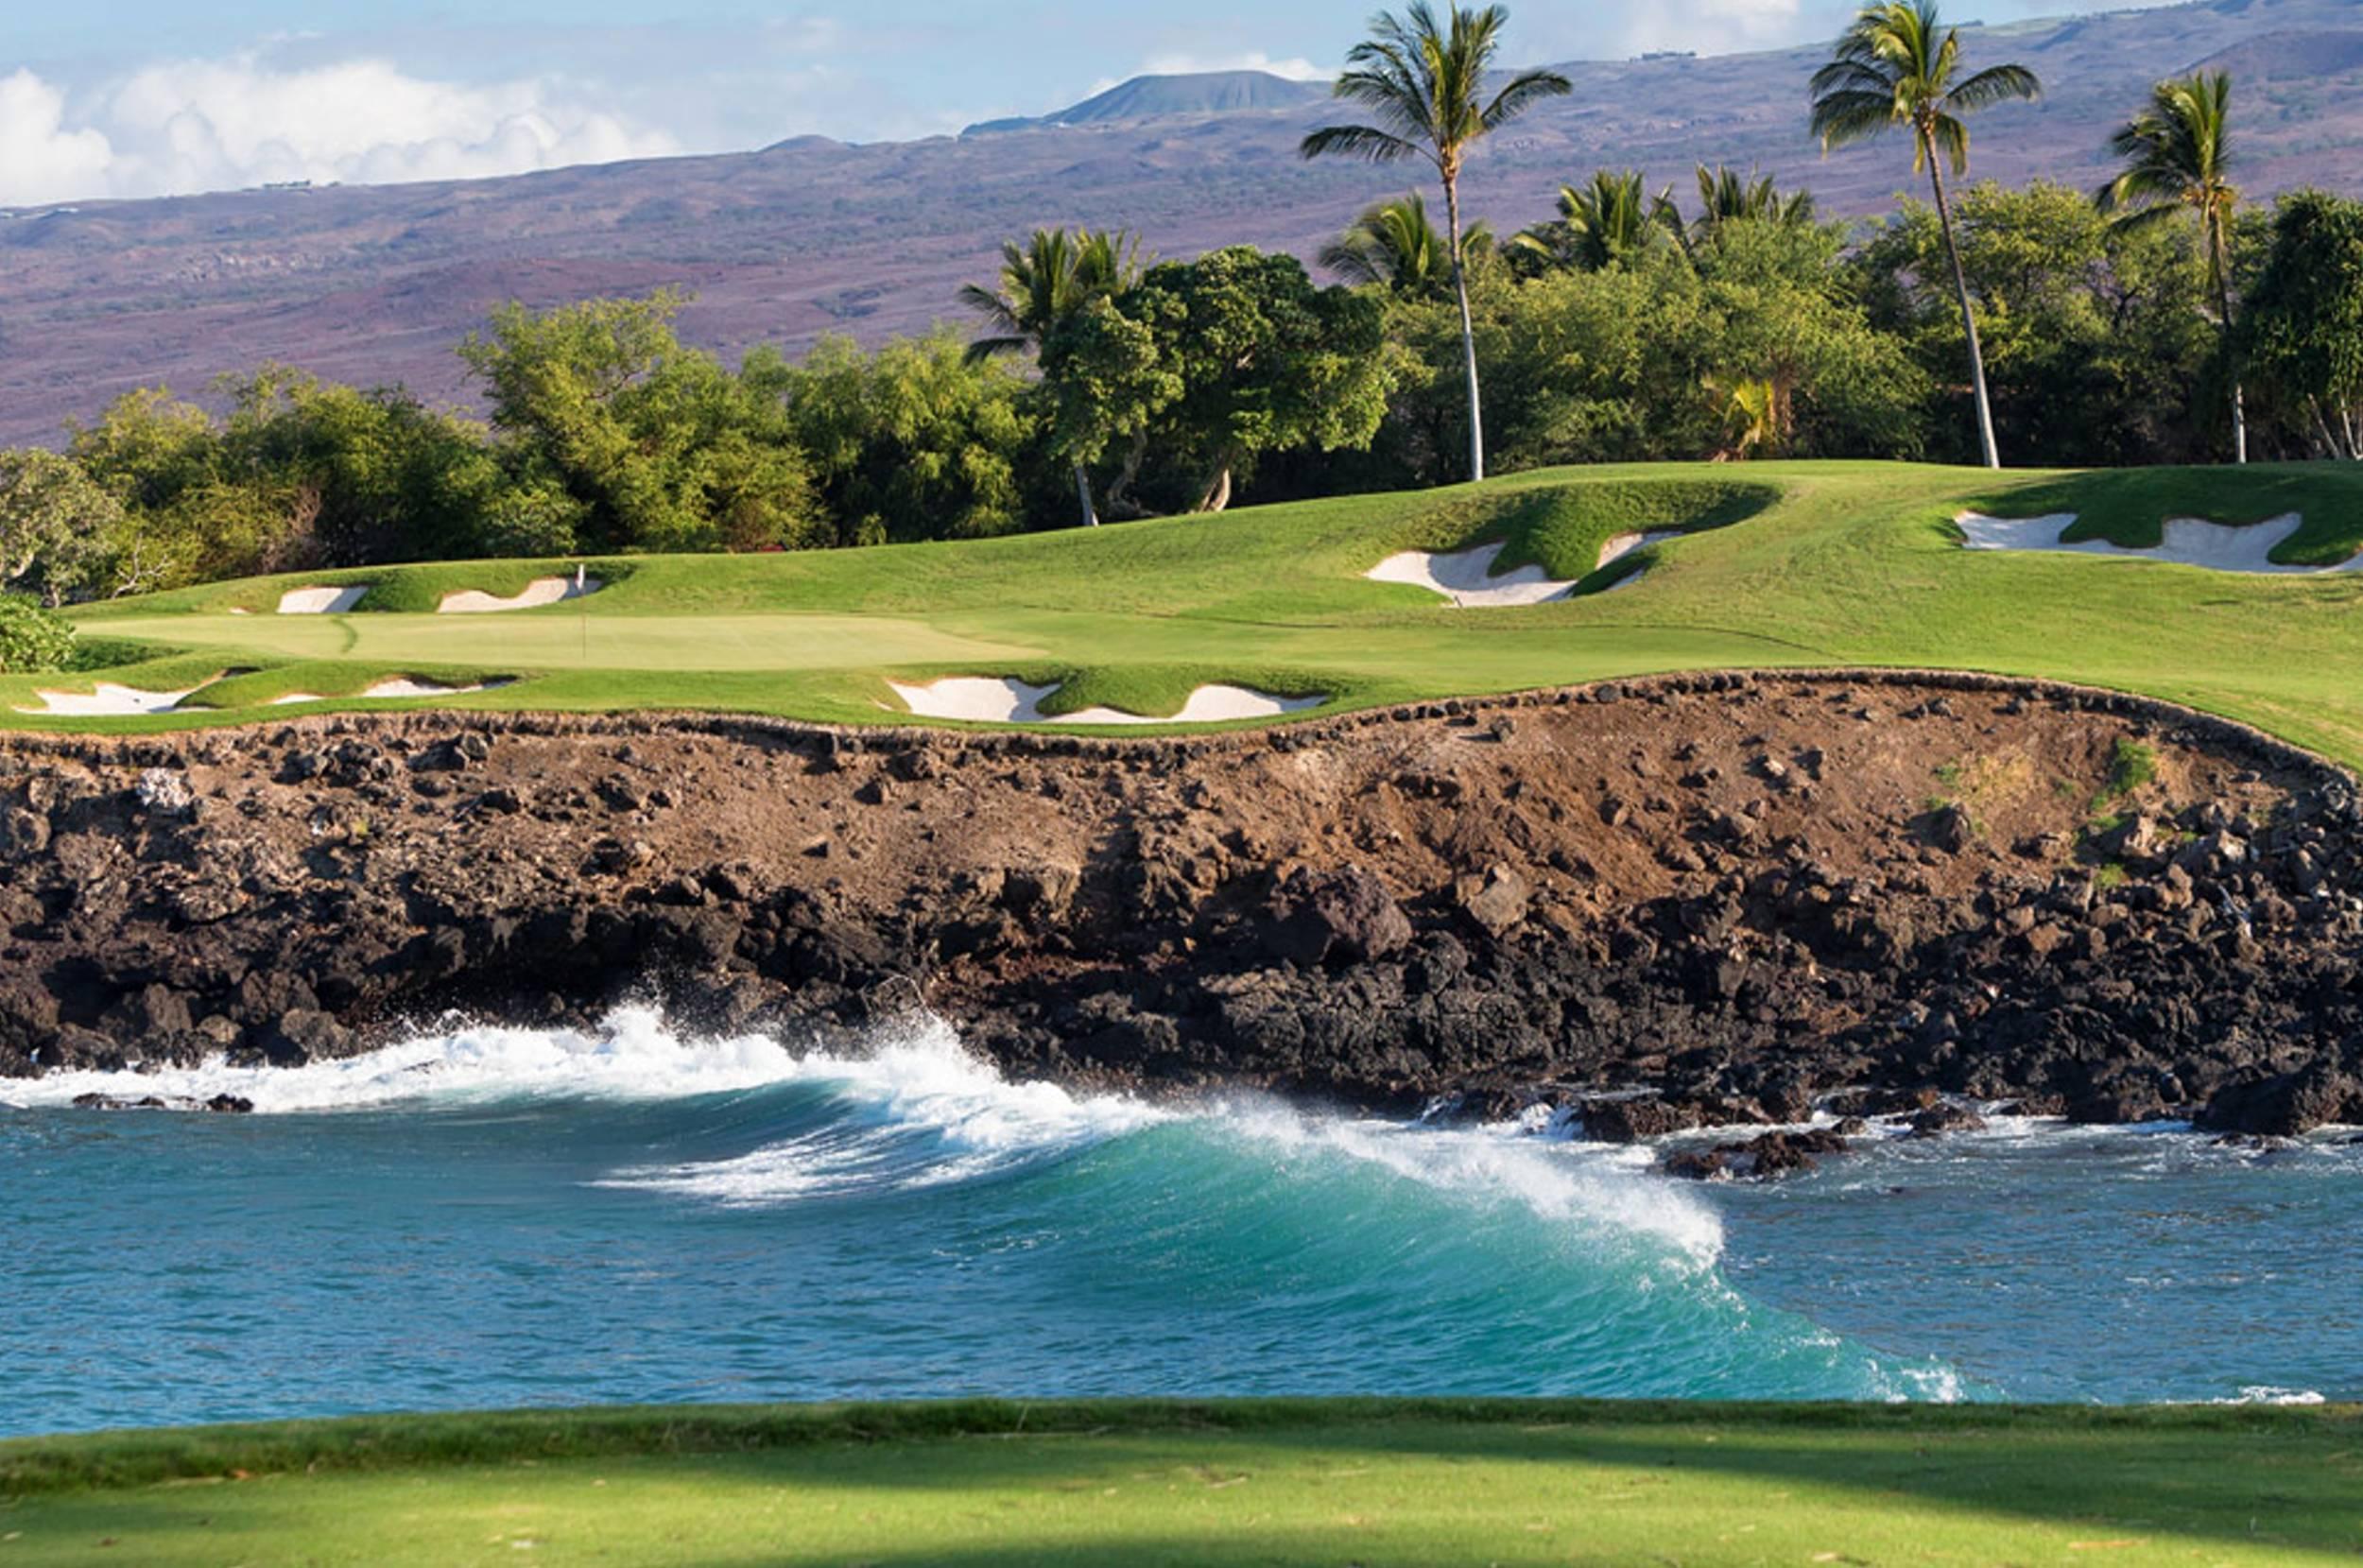 Hawaii Beach Golf Course - Hawaii Golf Course , HD Wallpaper & Backgrounds